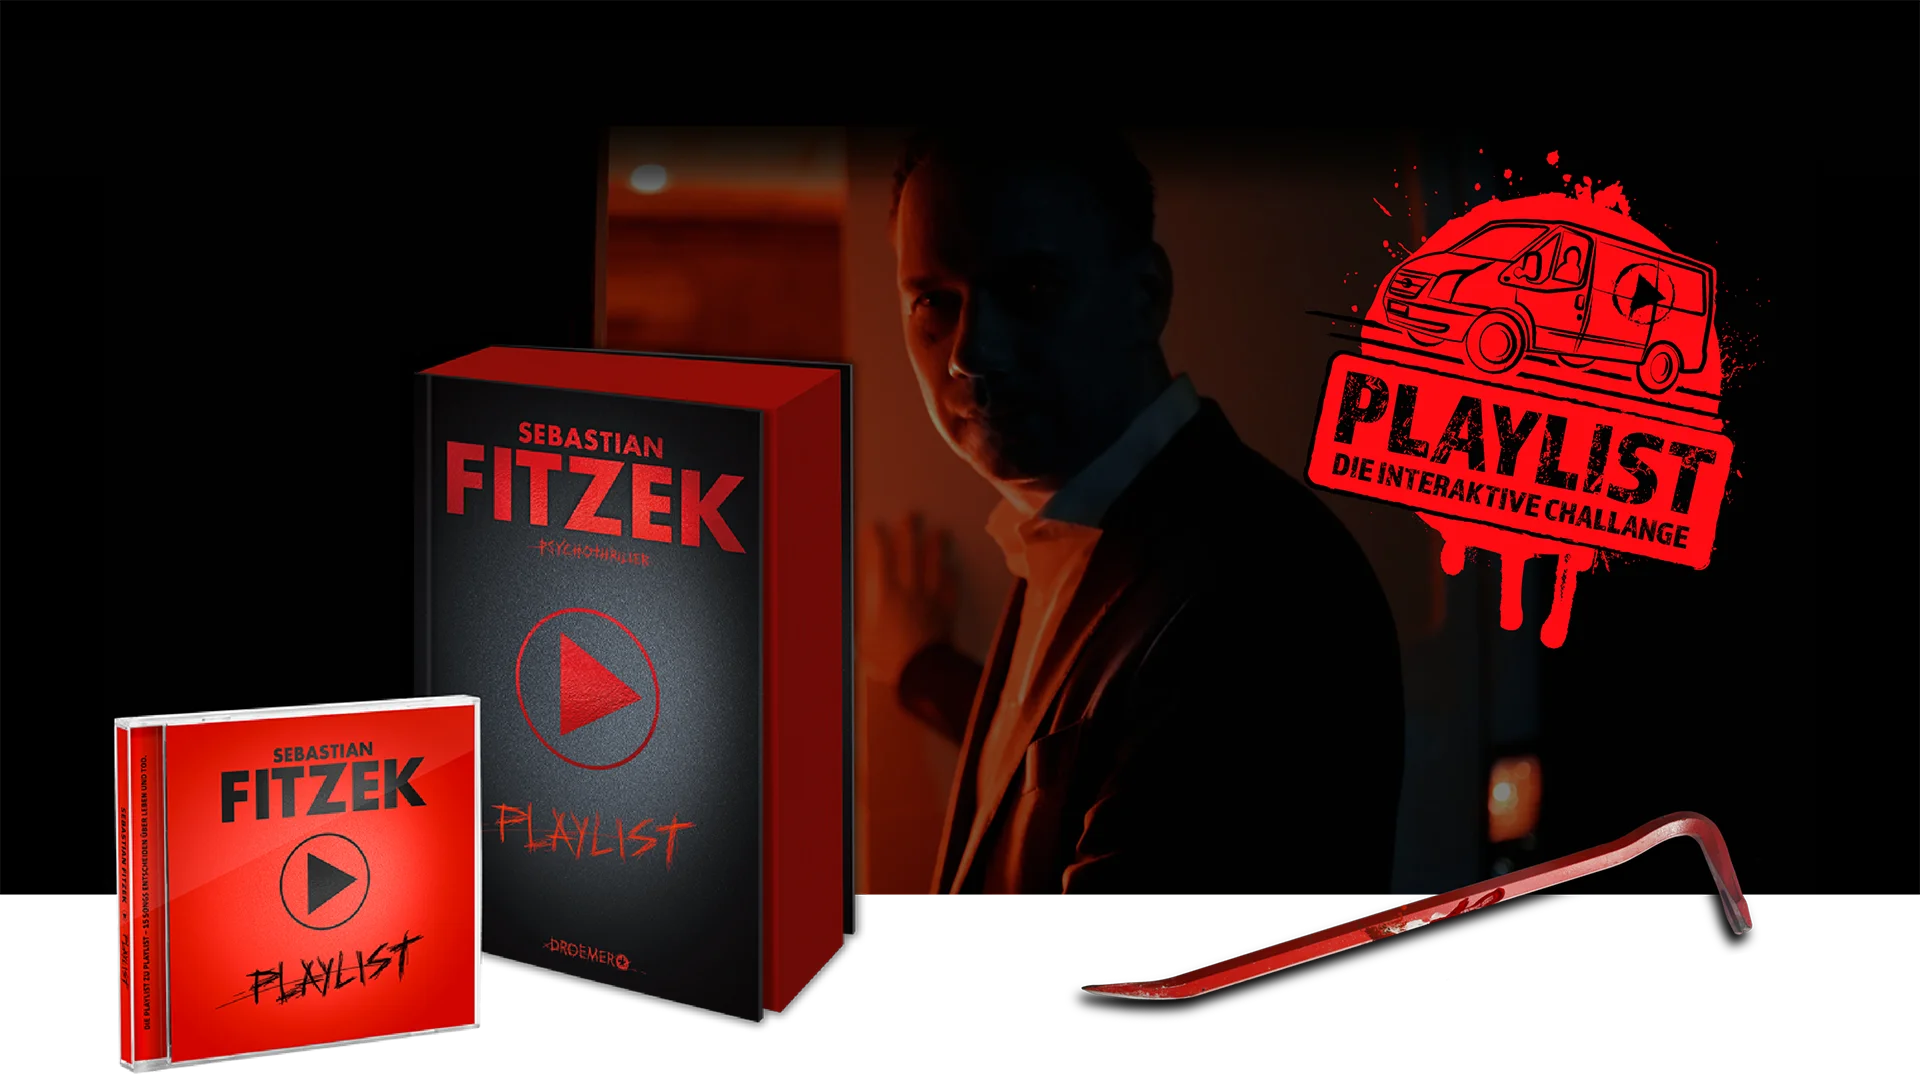 Ein Bild zeigt das Buch "Die Paylist" als Buch und CD von Sebastian Fitzek